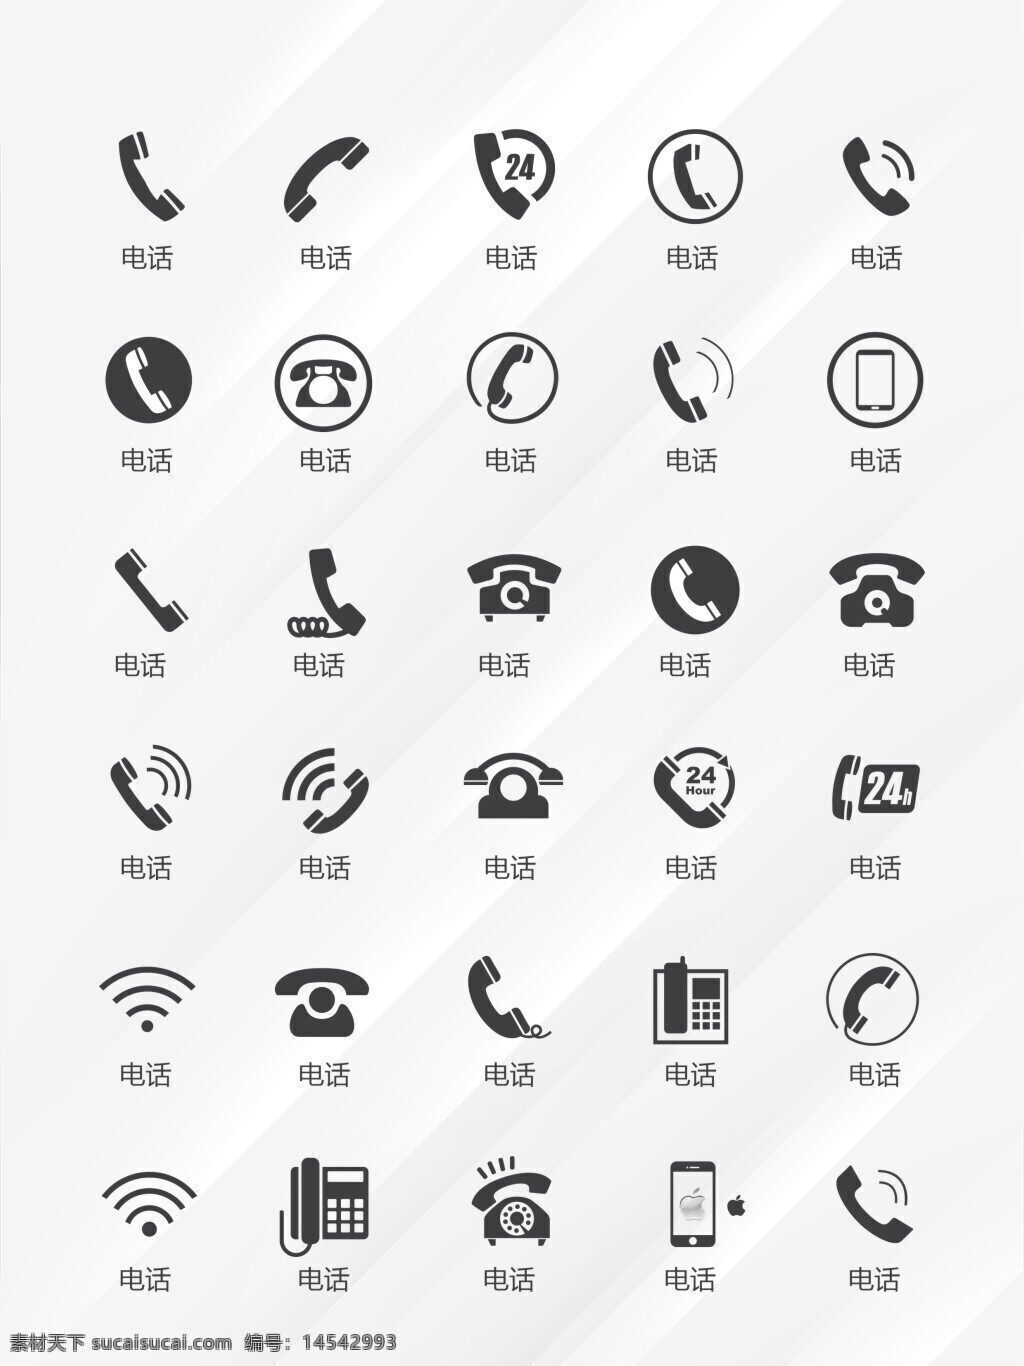 wifi图标 电话图标 电话标志 qq标志 微信标志 手机标志 手机图标 邮箱标志 邮箱图标 地